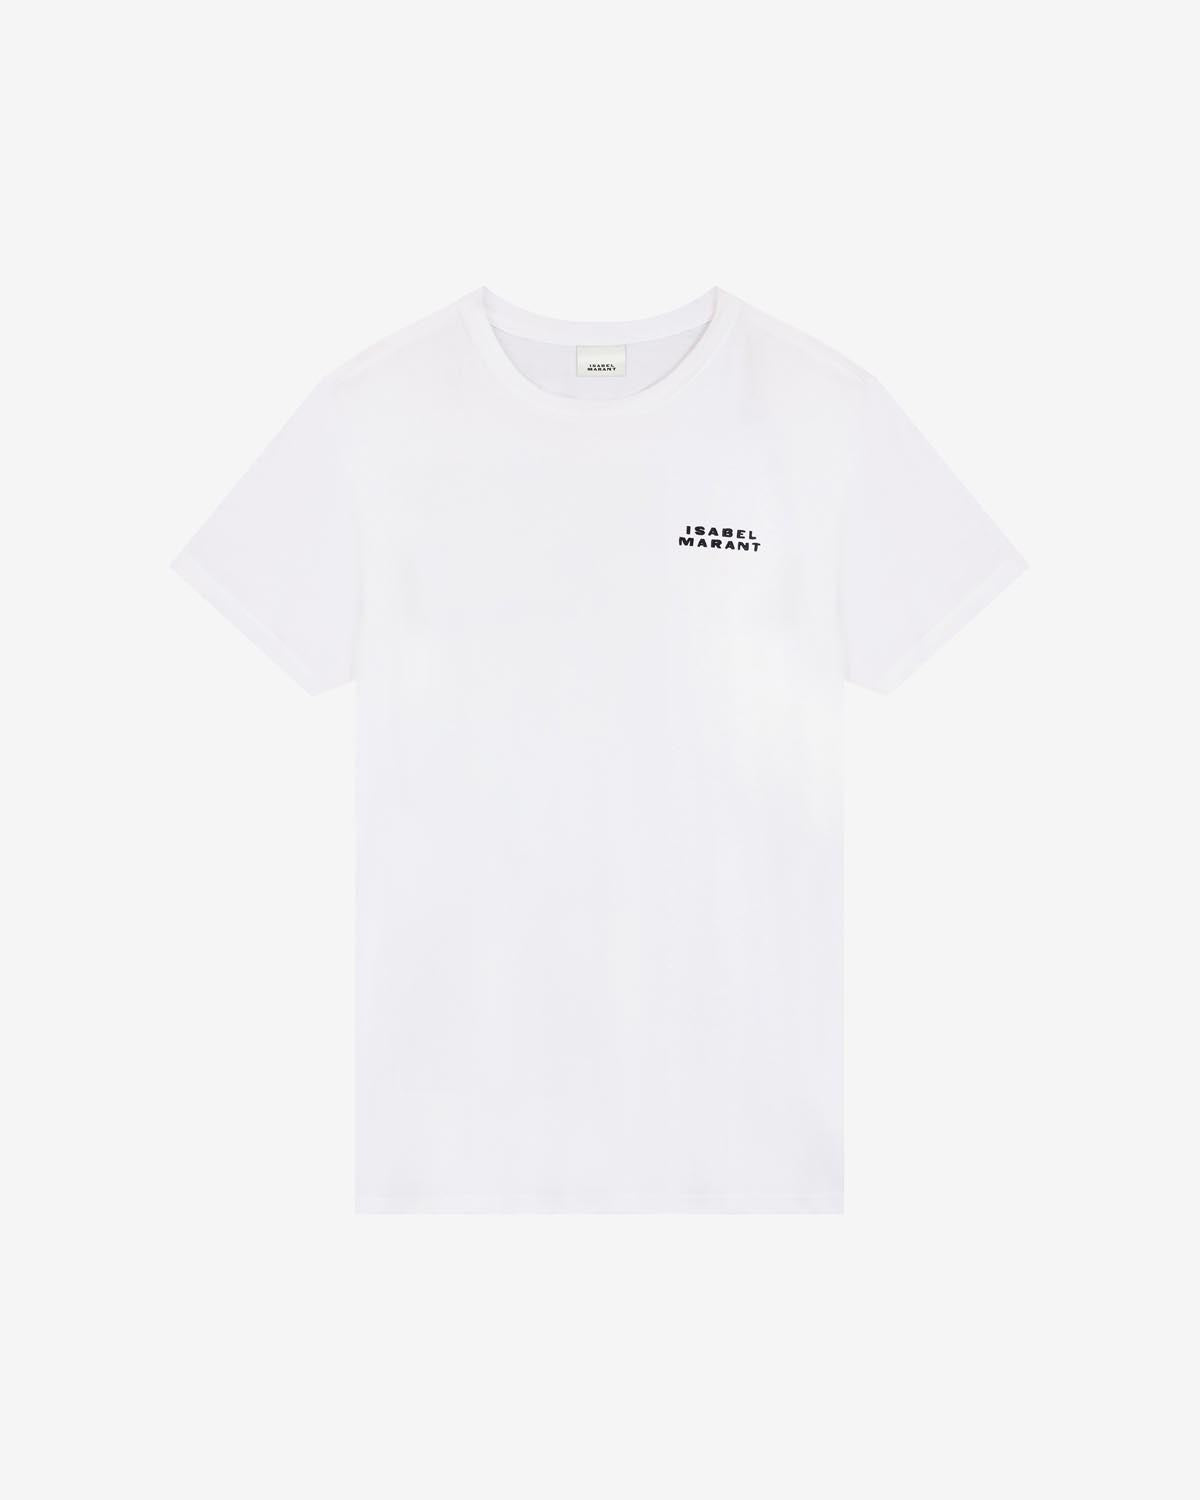 Vidal ロゴ tシャツ Woman 白 1